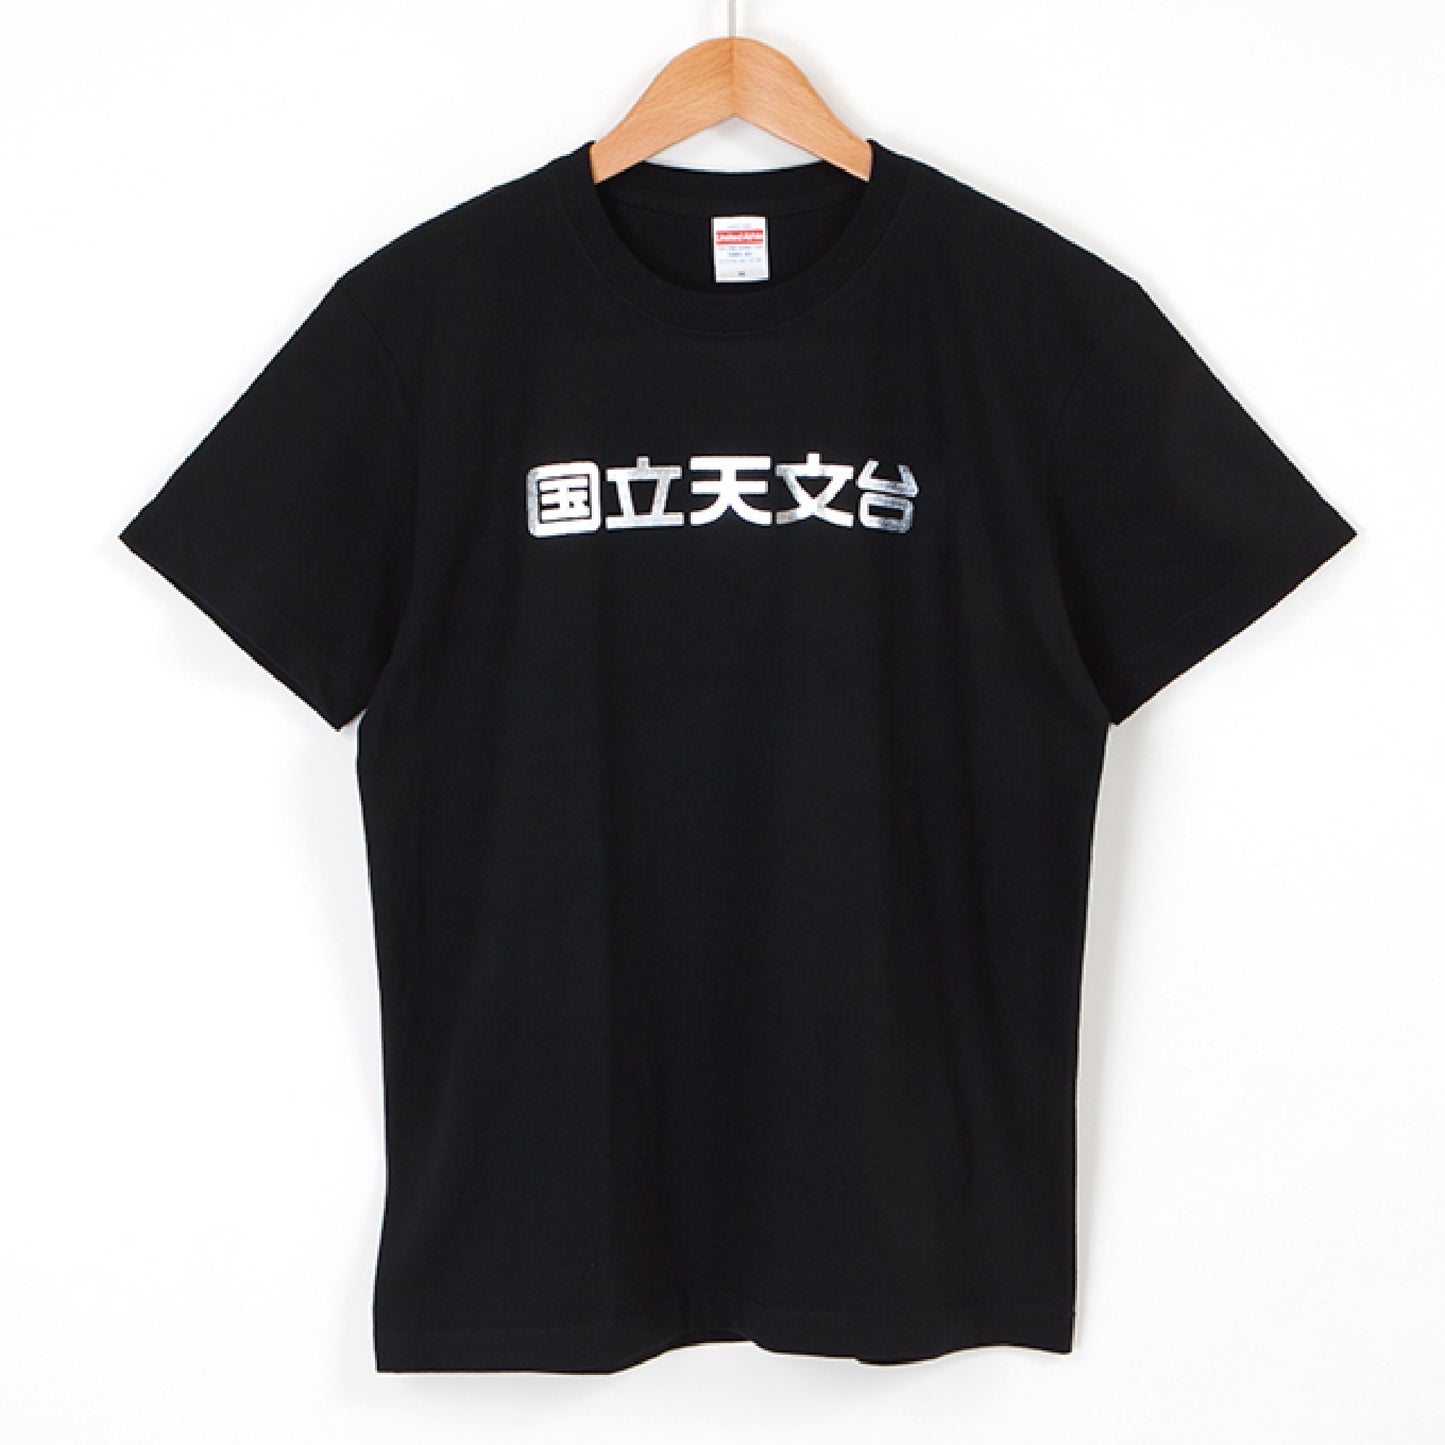 国立天文台 NAOJ漢字 ロゴマーク きらきら Tシャツ ブラック S 00